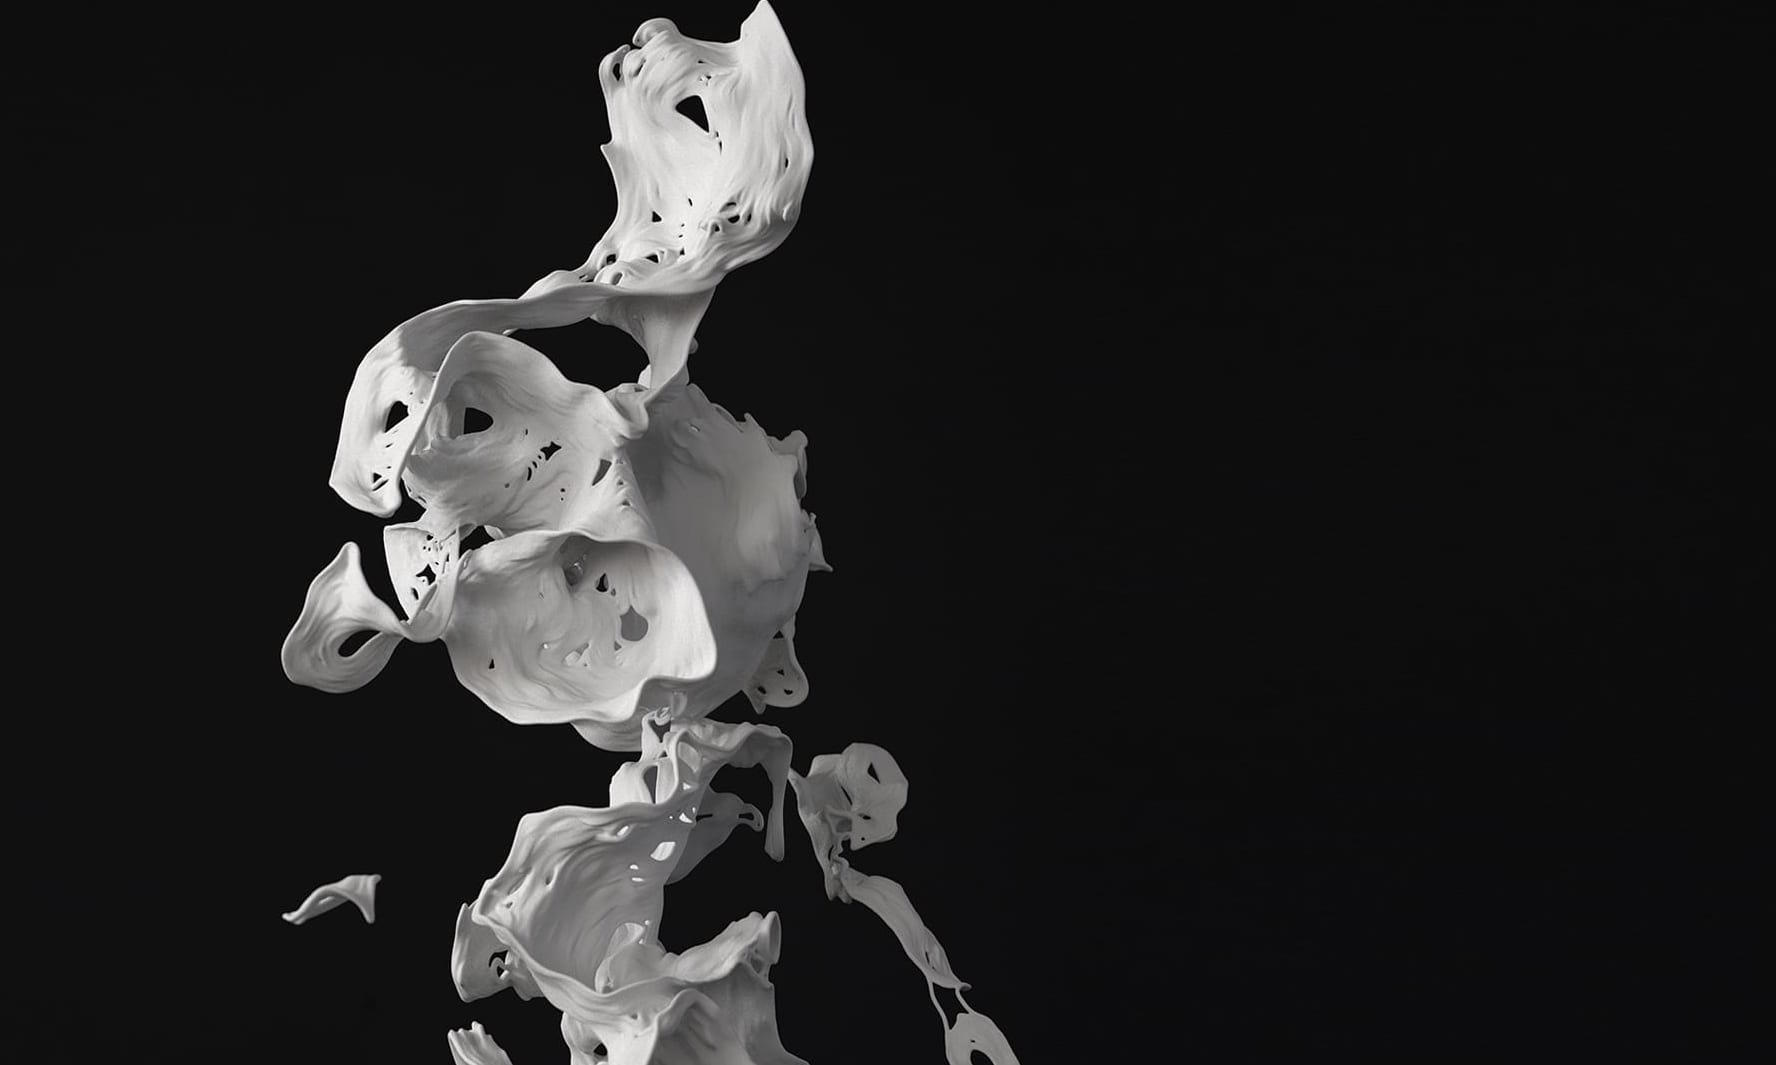 ルイジ・オノラのデジタル彫刻個展を「CONTRAST」で開催